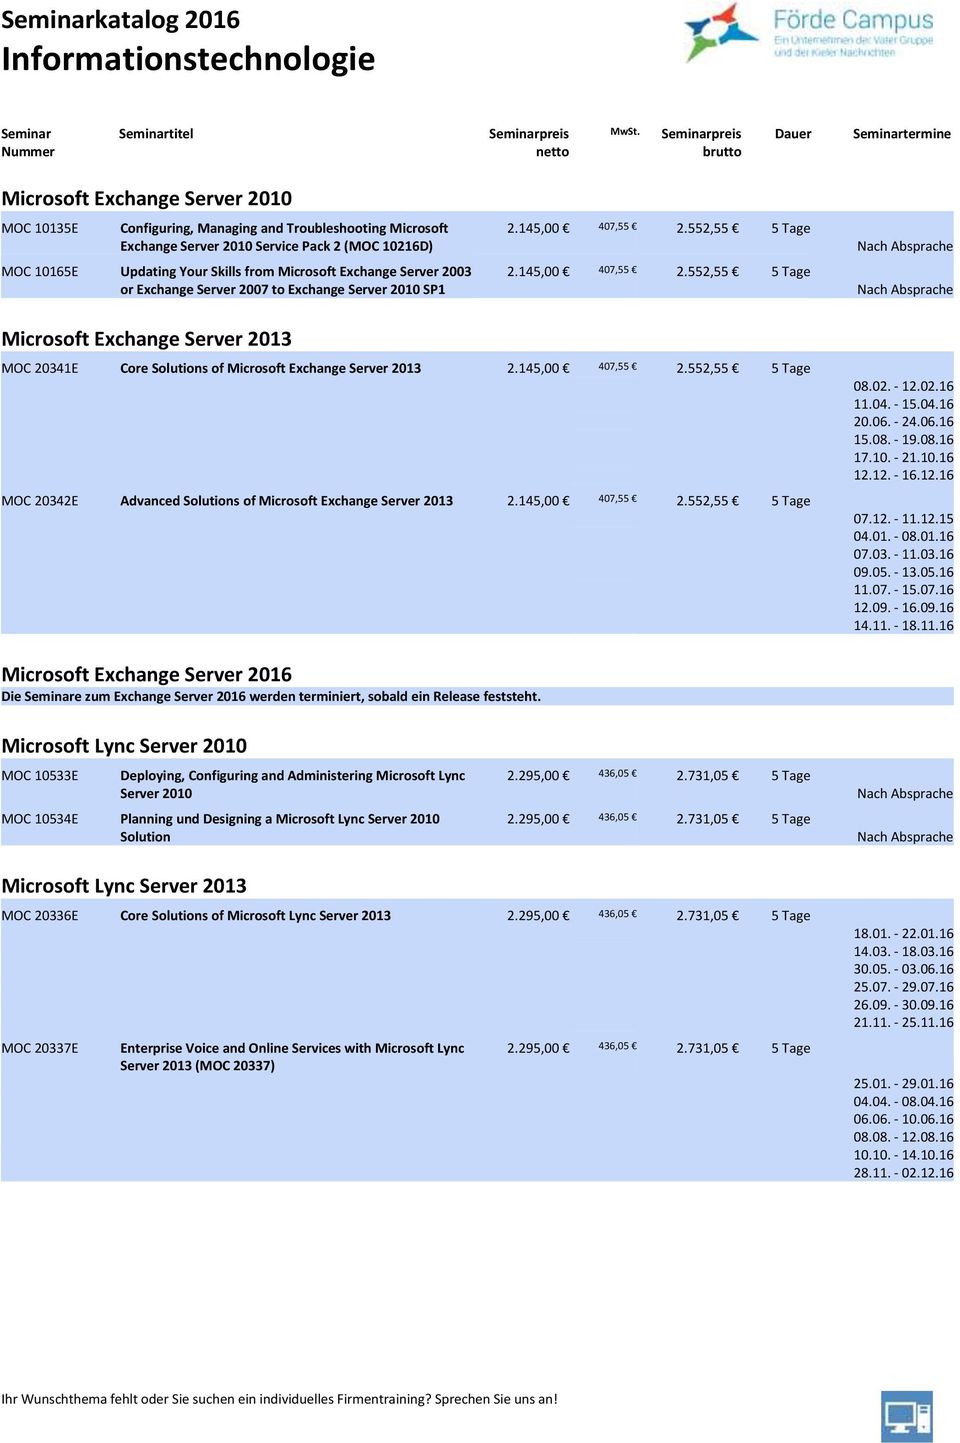 552,55 5 Tage 2.145,00 407,55 2.552,55 5 Tage Microsoft Exchange Server 2013 MOC 20341E Core Solutions of Microsoft Exchange Server 2013 2.145,00 407,55 2.552,55 5 Tage MOC 20342E Advanced Solutions of Microsoft Exchange Server 2013 2.